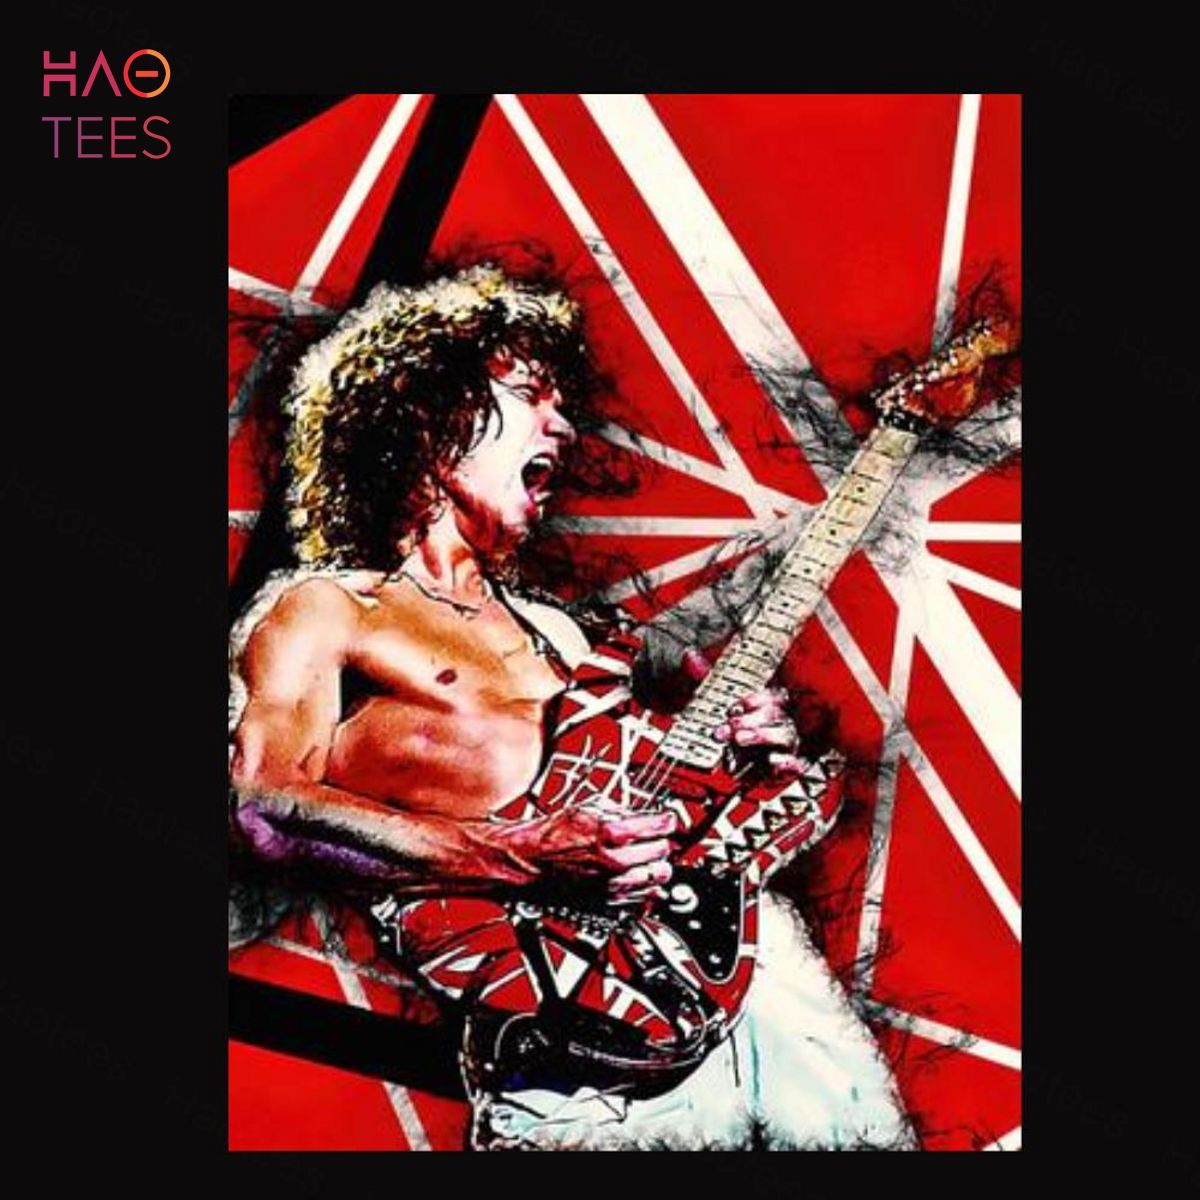 Eddie Van Halen Guitar Shirt